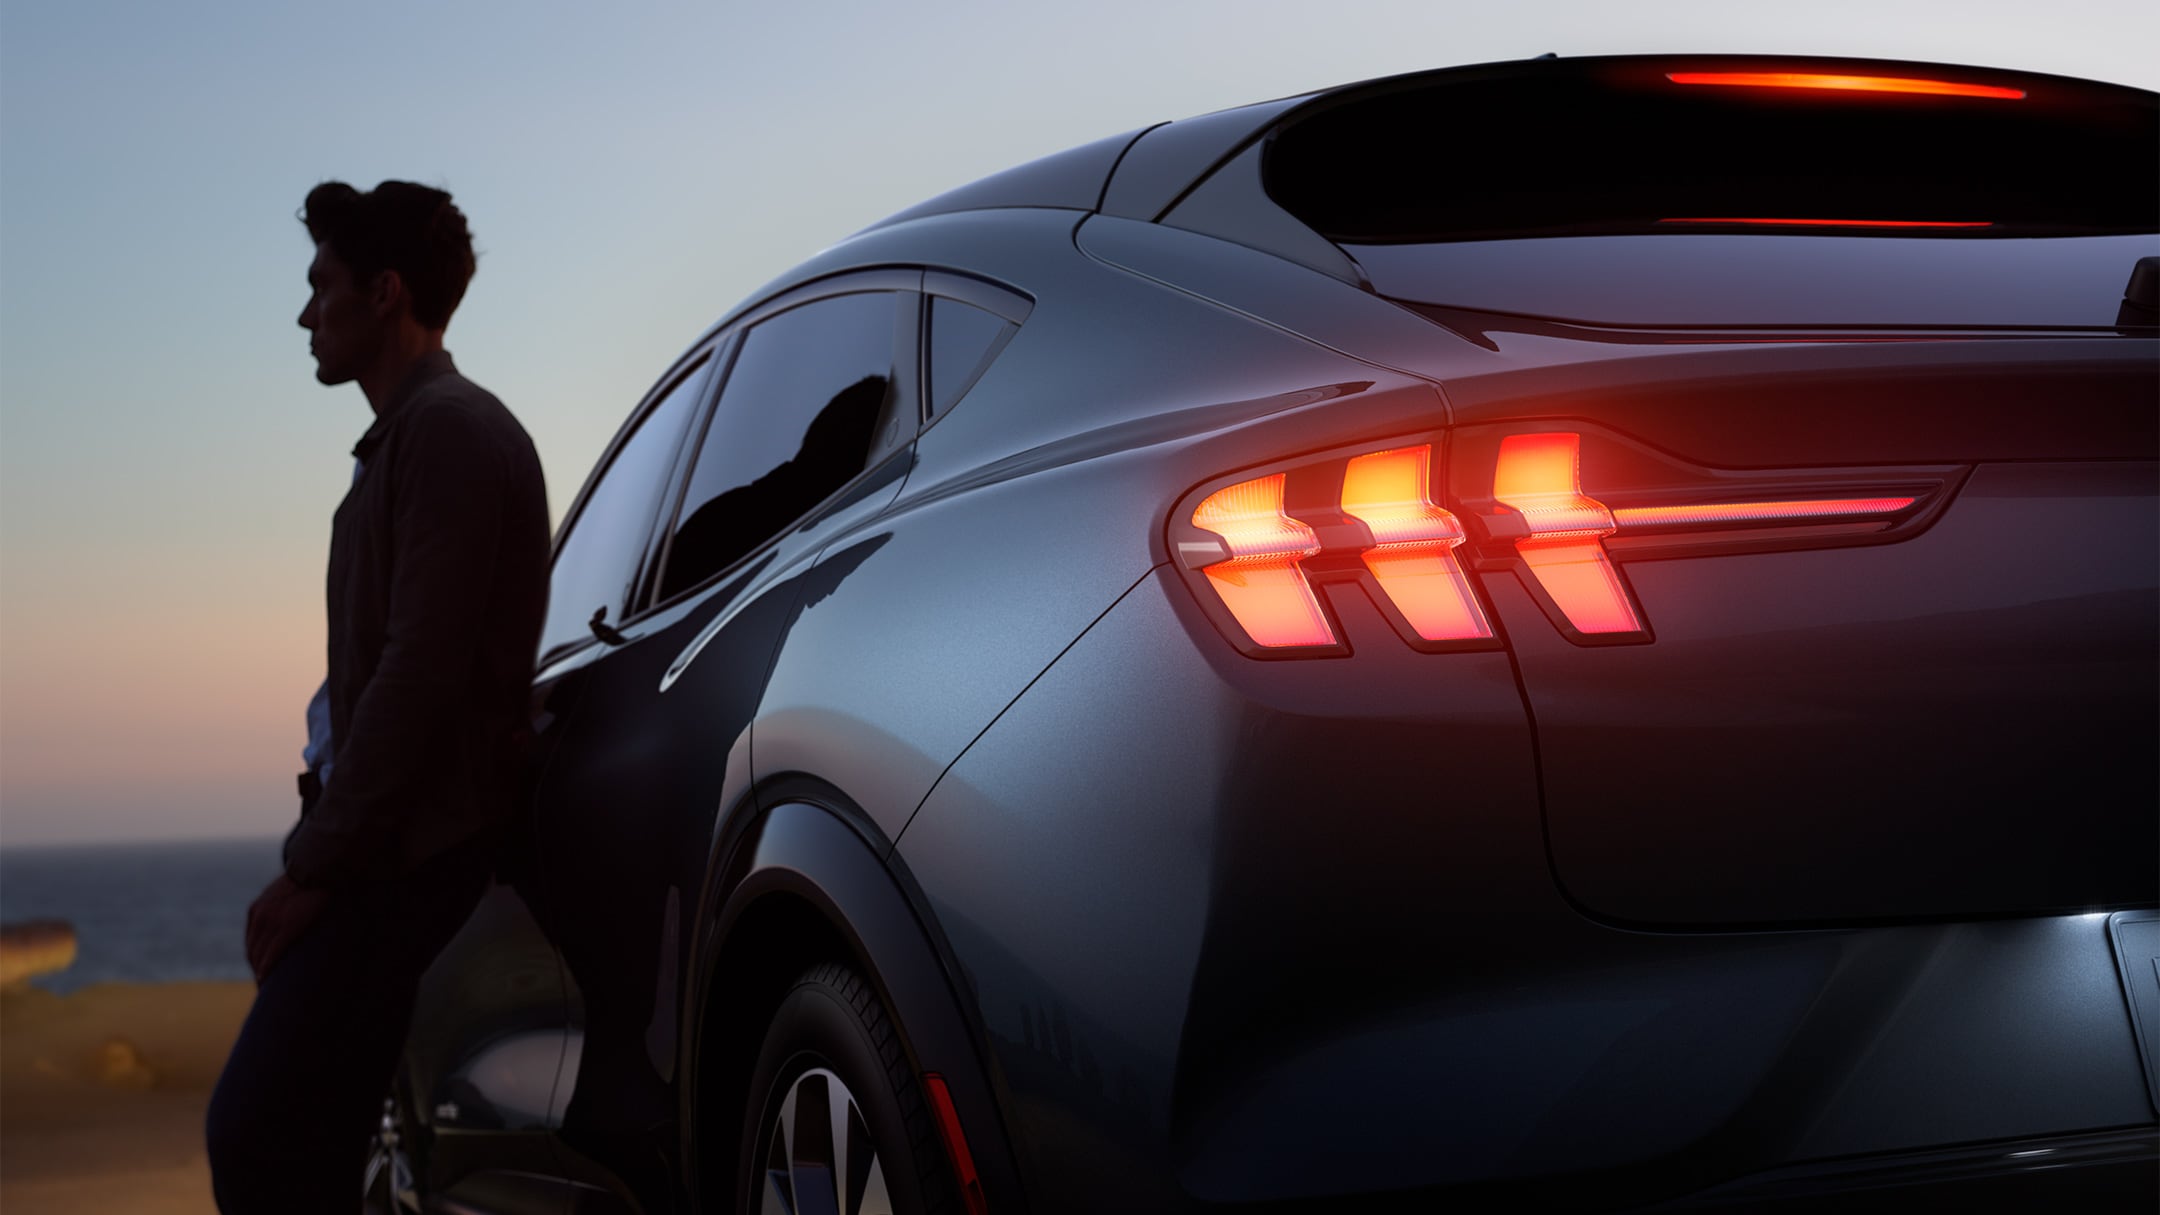 Muž opírající se o zbrusu nový Ford Mustang Mach-E během západu slunce